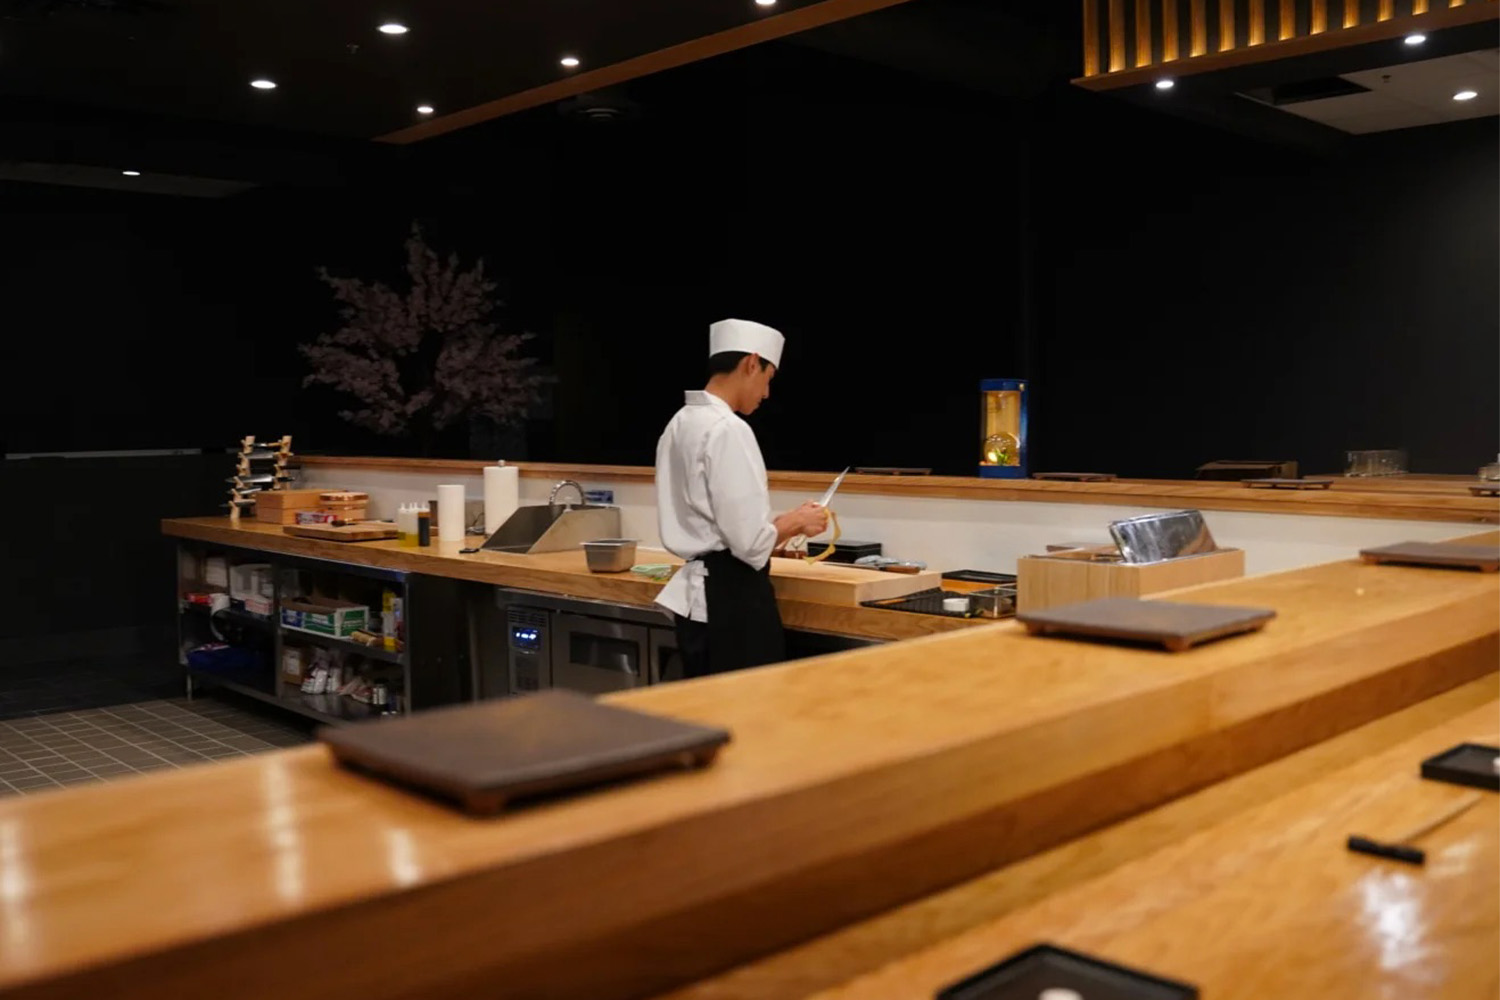 Sushi bar at Kinzo